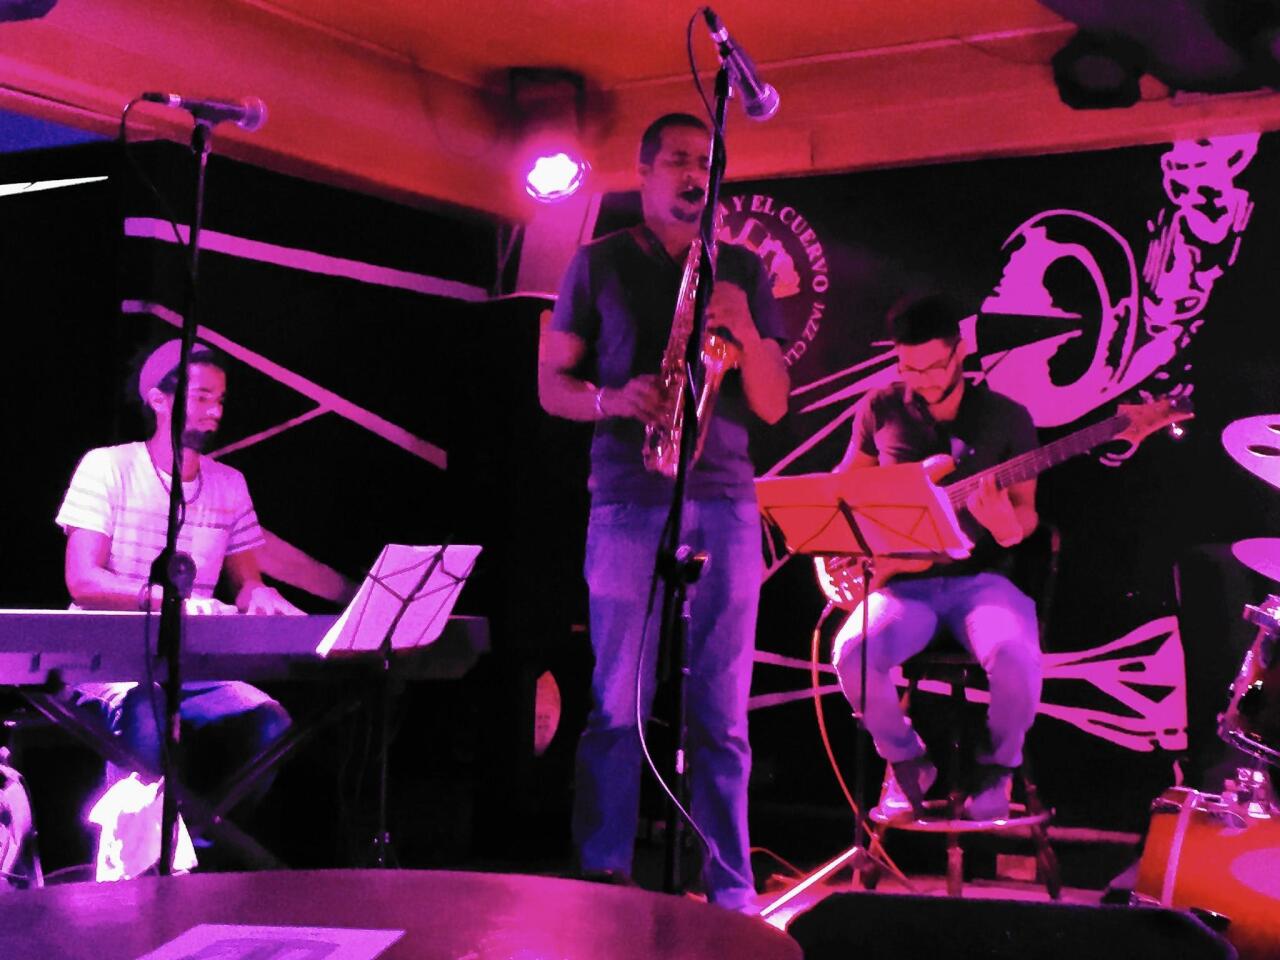 Young musicians Denys Carbo and Jazz en Trance perform a midafternoon gig at Havana’s legendary jazz club, La Zorra y el Cuervo.